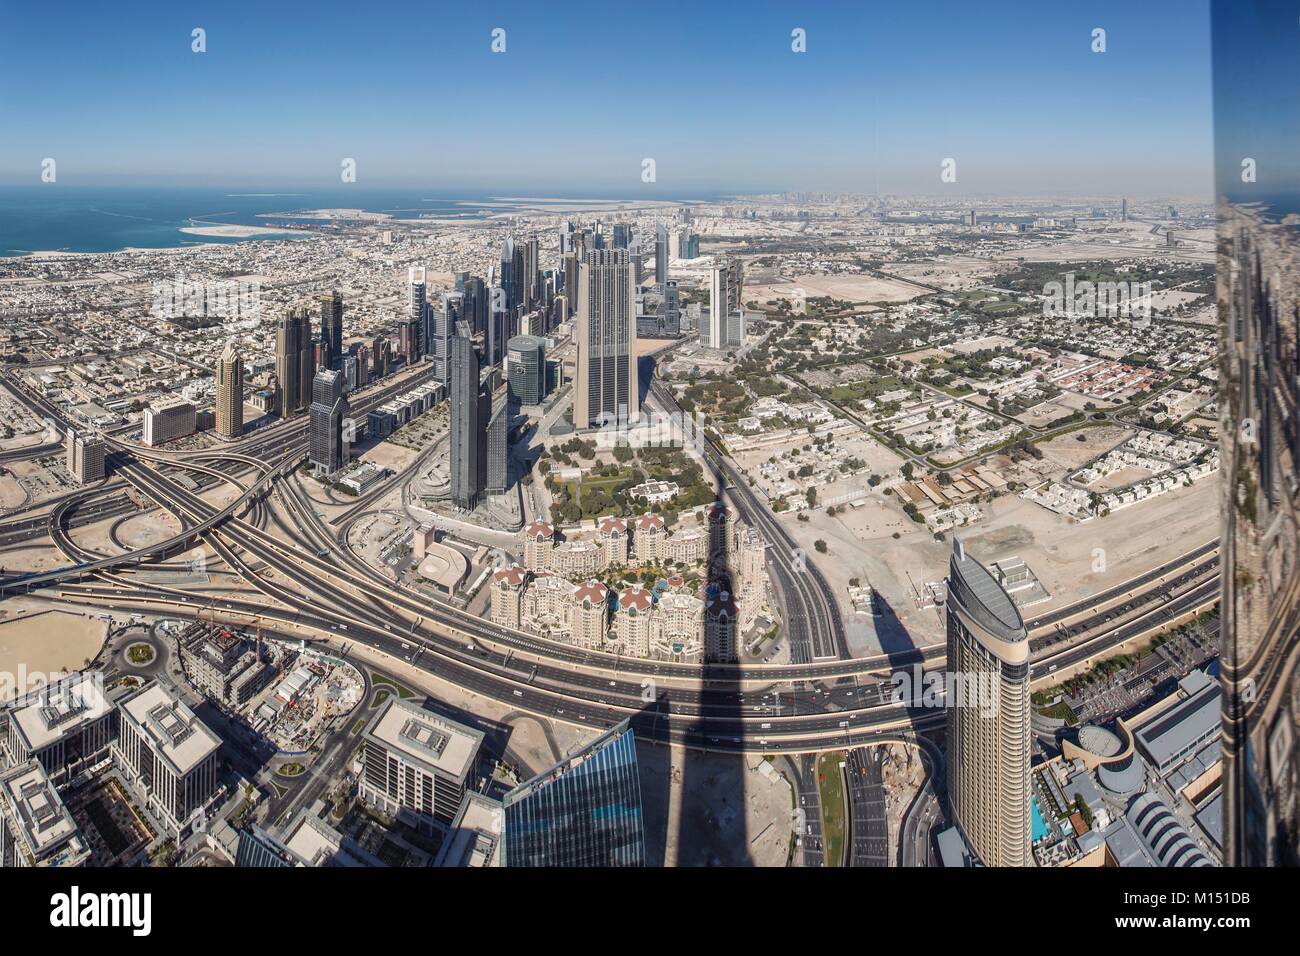 Emirats Arabes Unis, Dubai, les tours de la Sheikh Zayed Road à partir du haut (Burj Khalifa) Banque D'Images